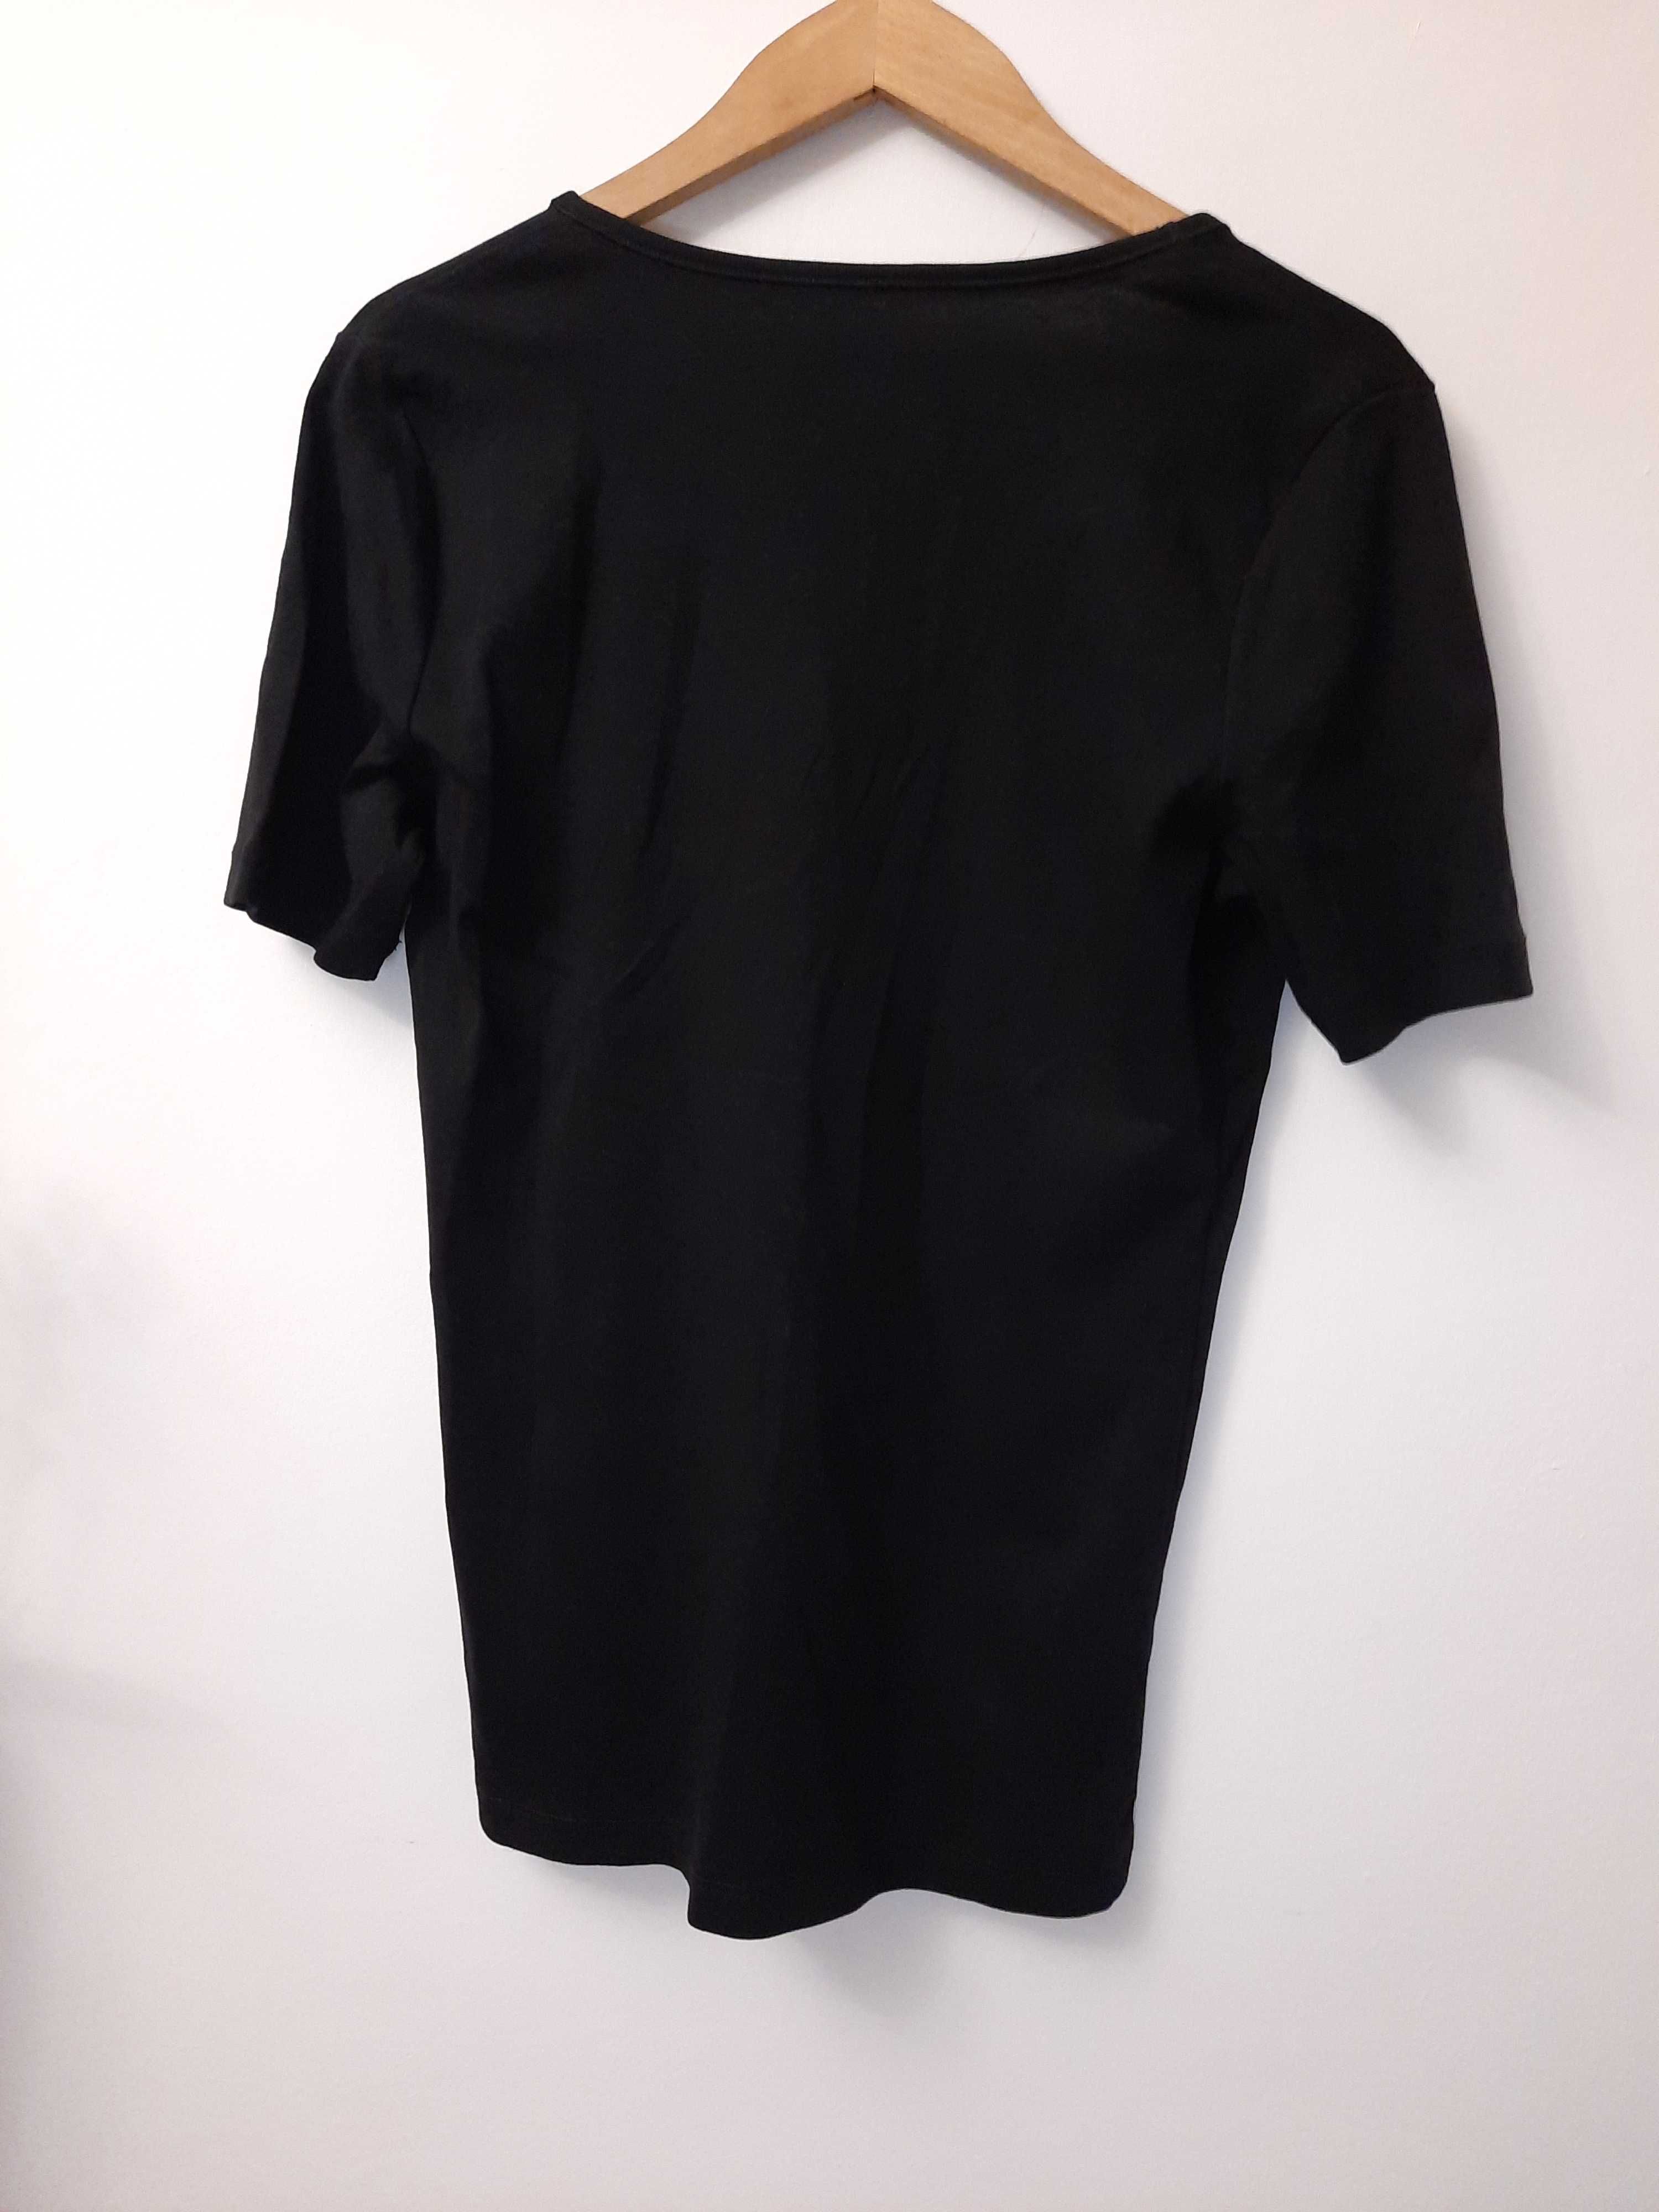 Bluzka bawełniana czarna bluzeczka Otto Kern rozmiar 40 L